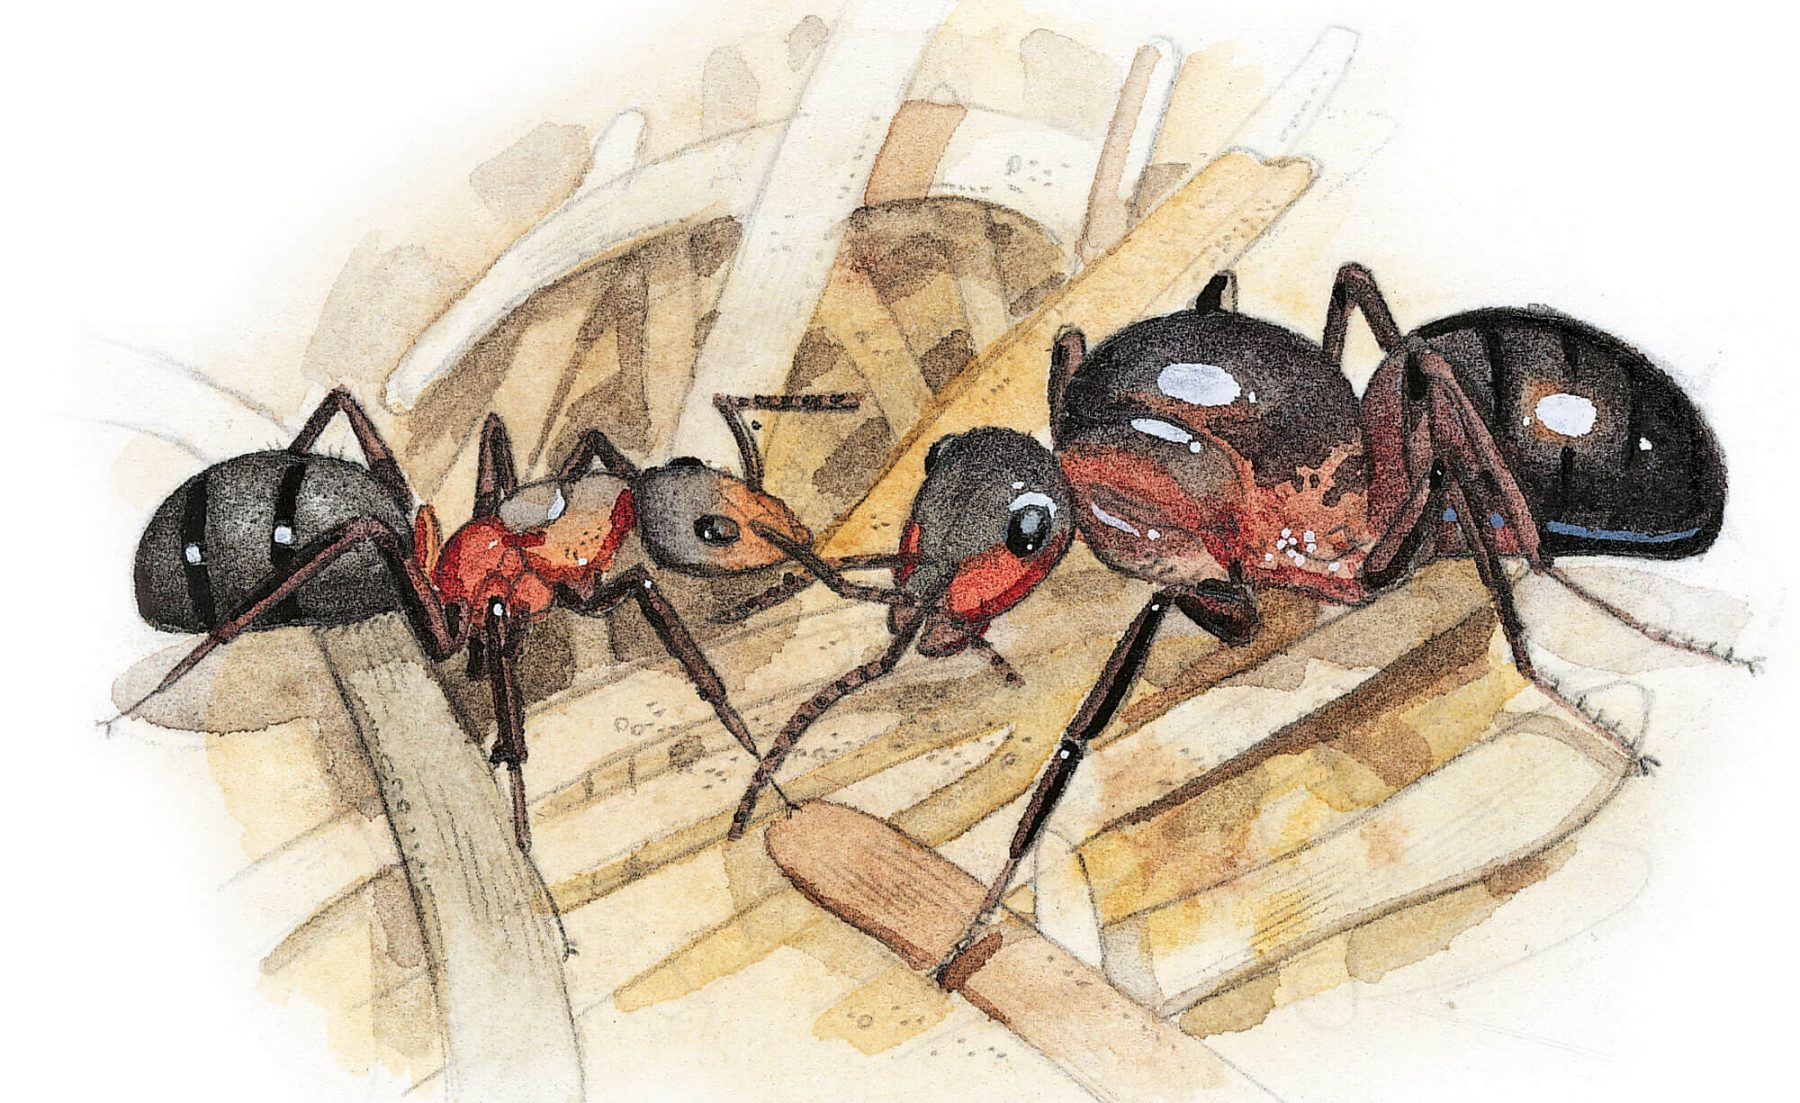 Rencontrez les fourmis sur le terrain - La Salamandre